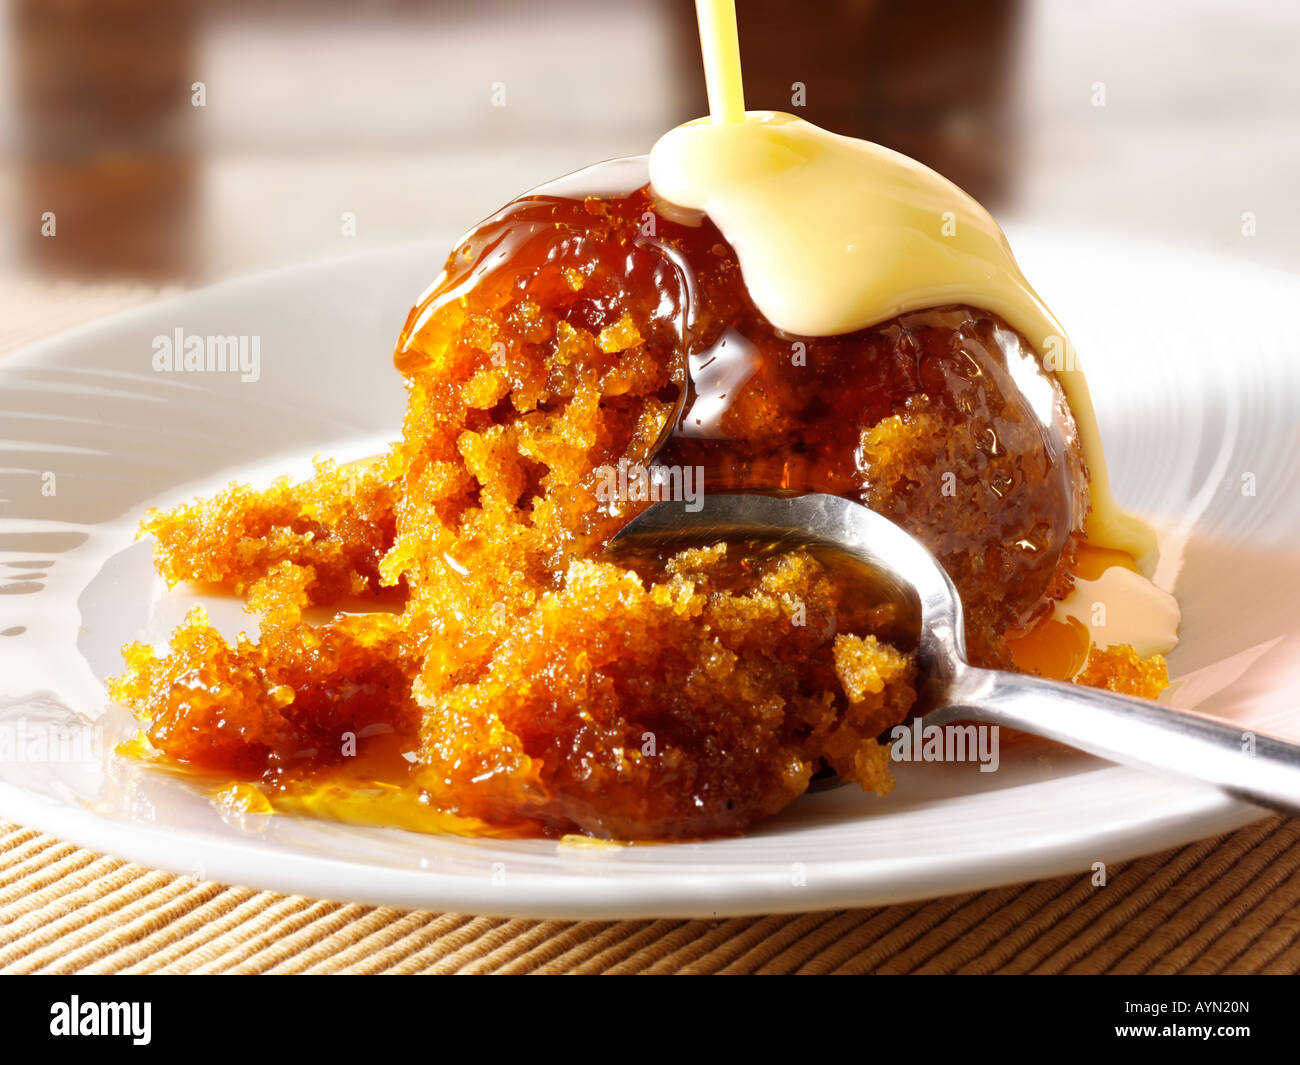 Británico tradicional bizcocho esponjoso de toffee Pudding y flan de postre servido en un plato Foto de stock